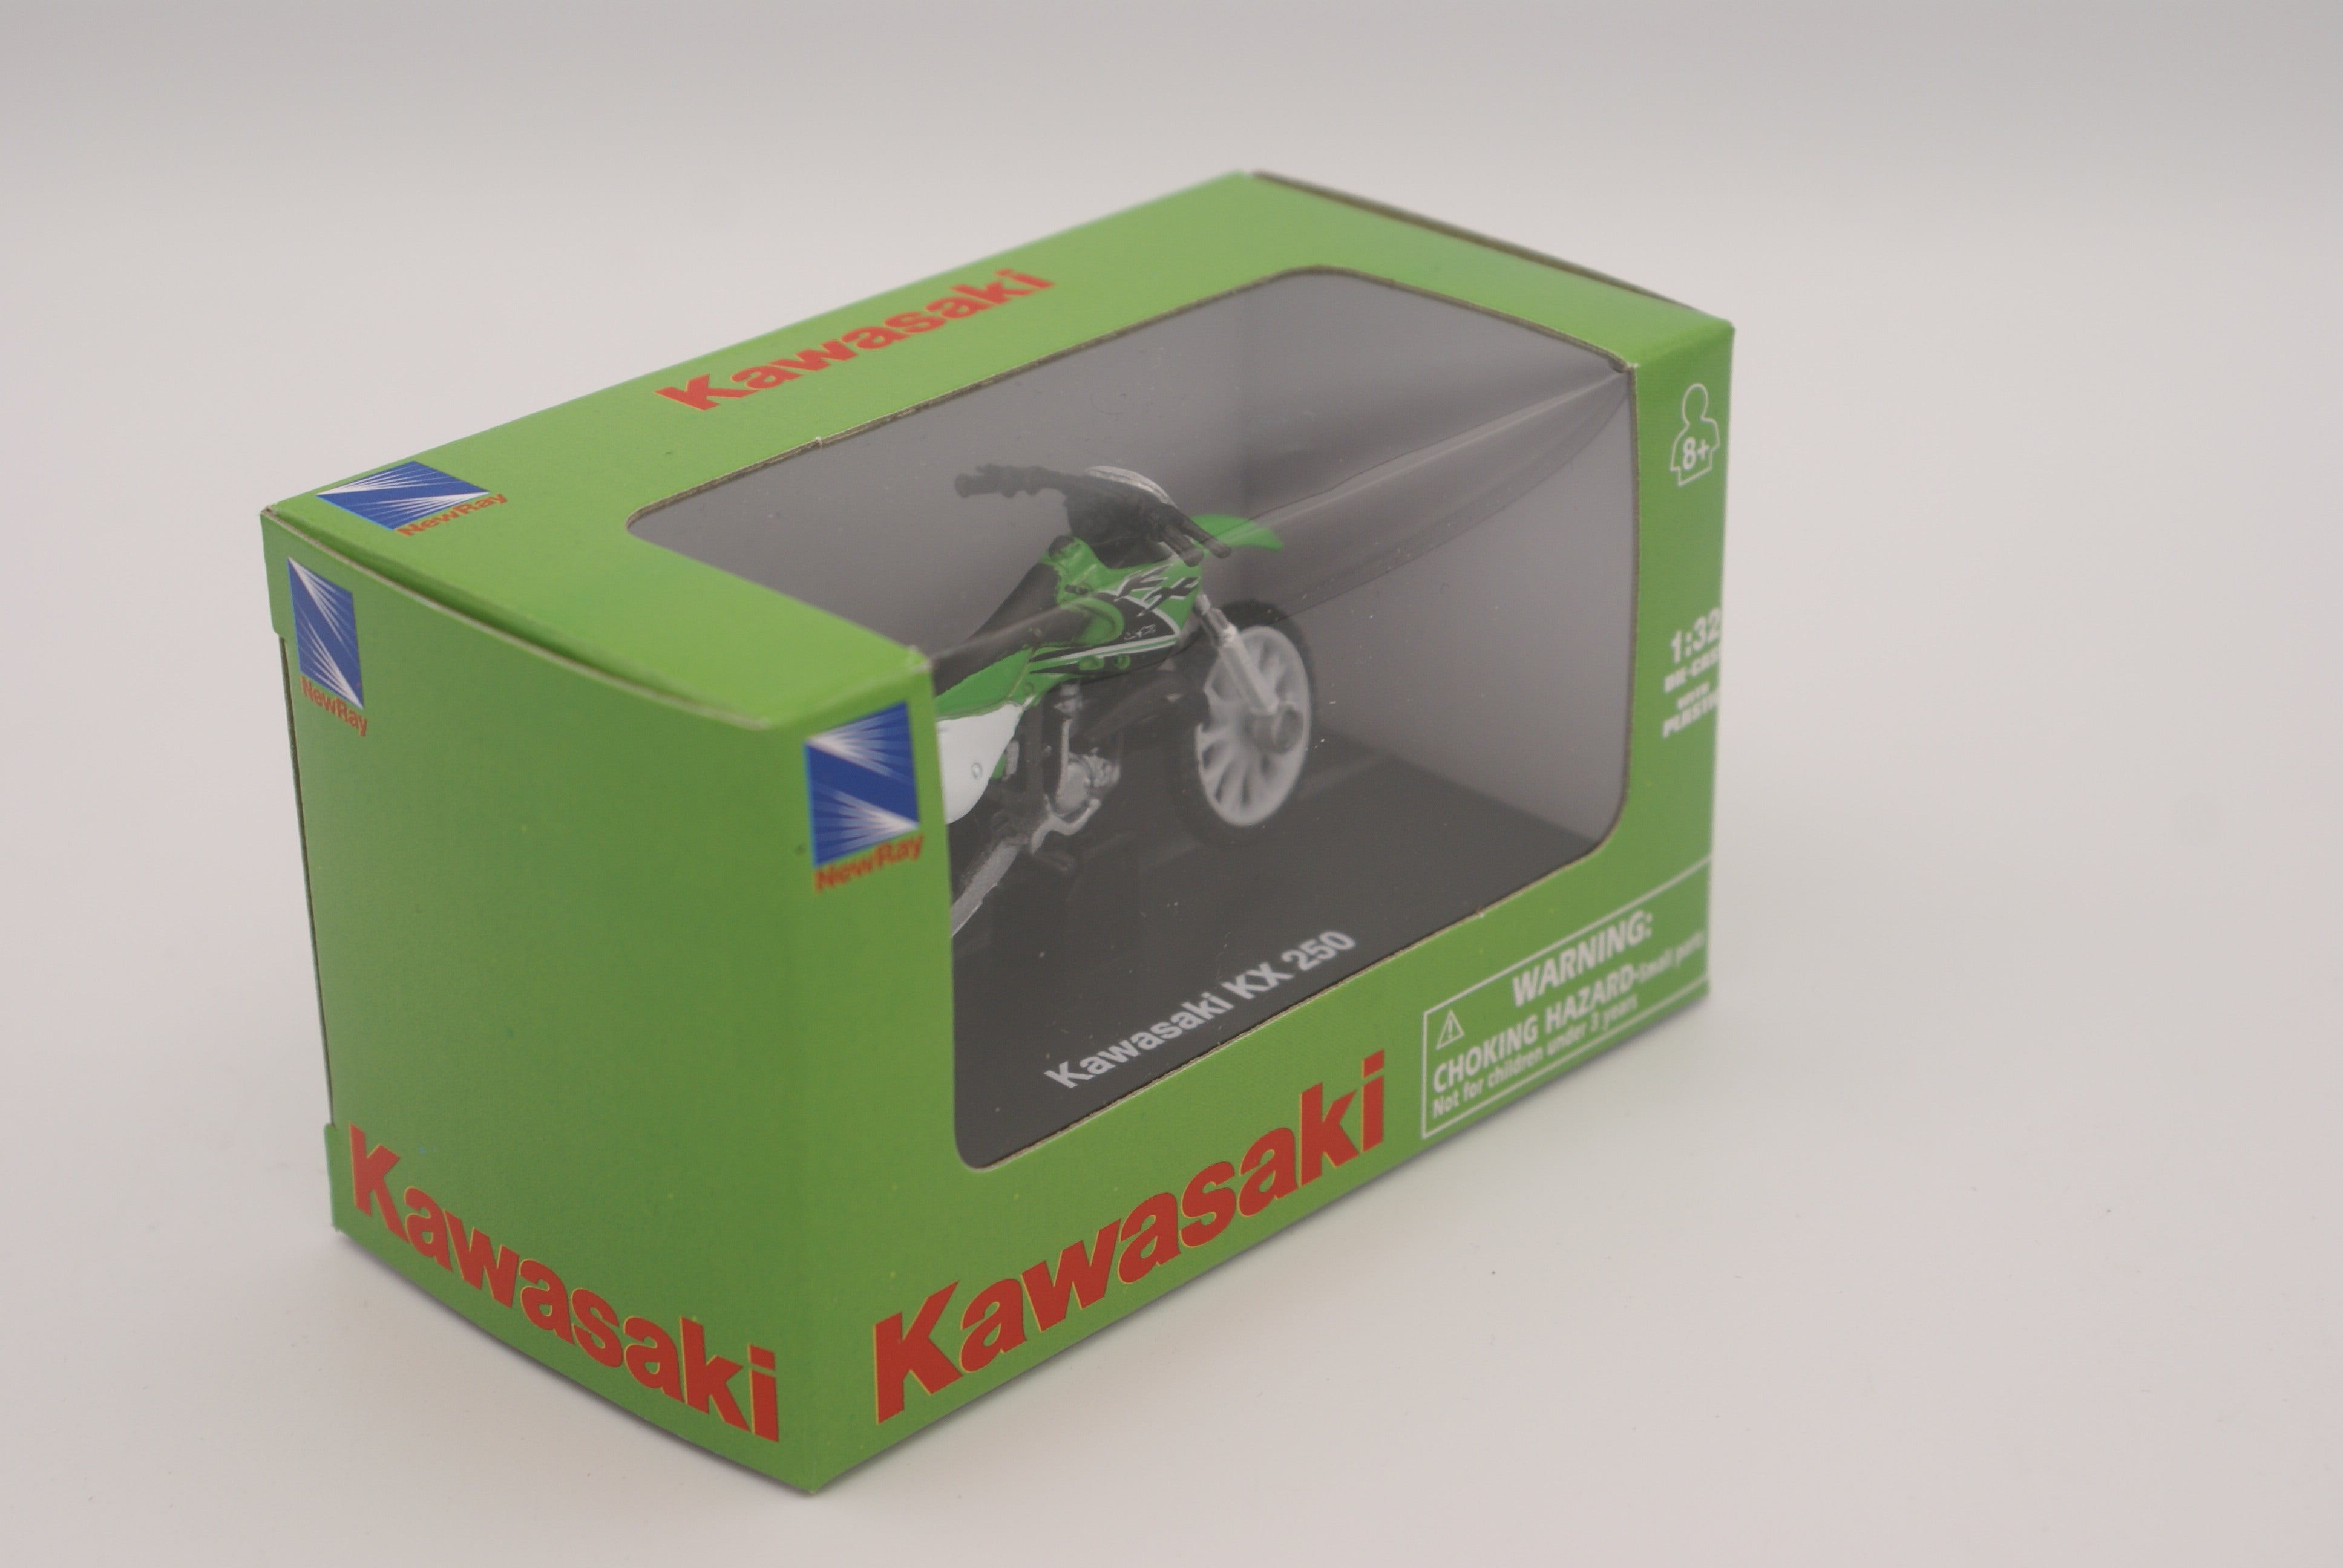 Kawasaki KX250